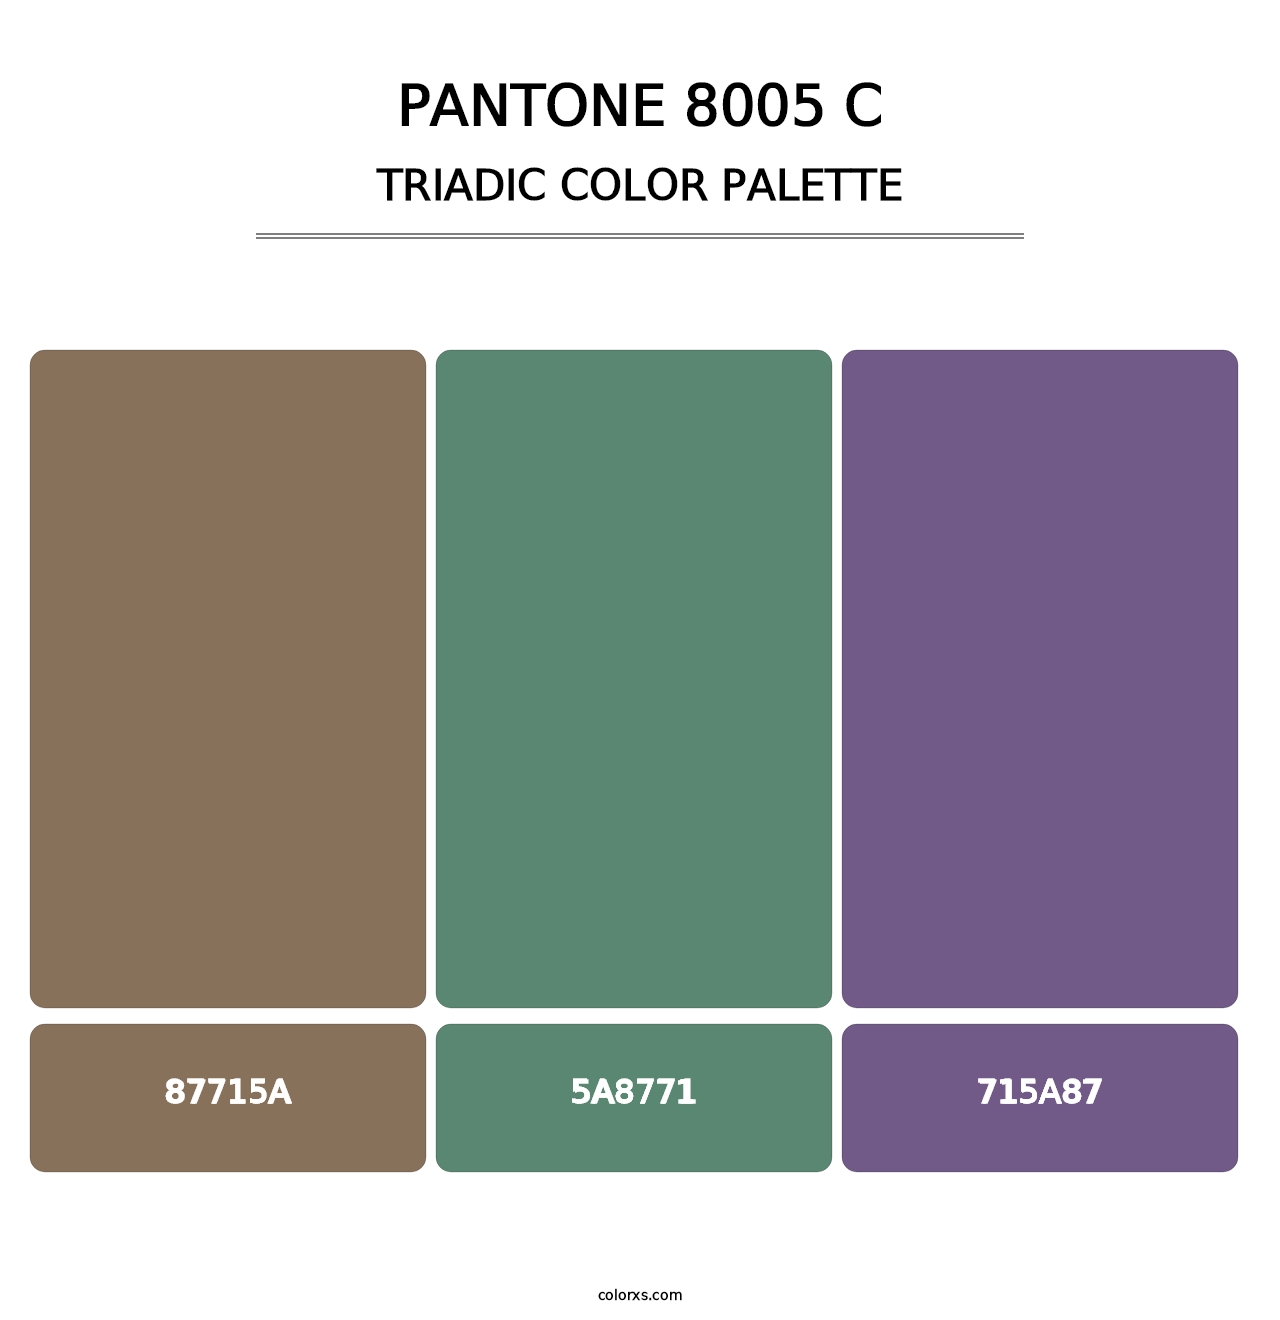 PANTONE 8005 C - Triadic Color Palette